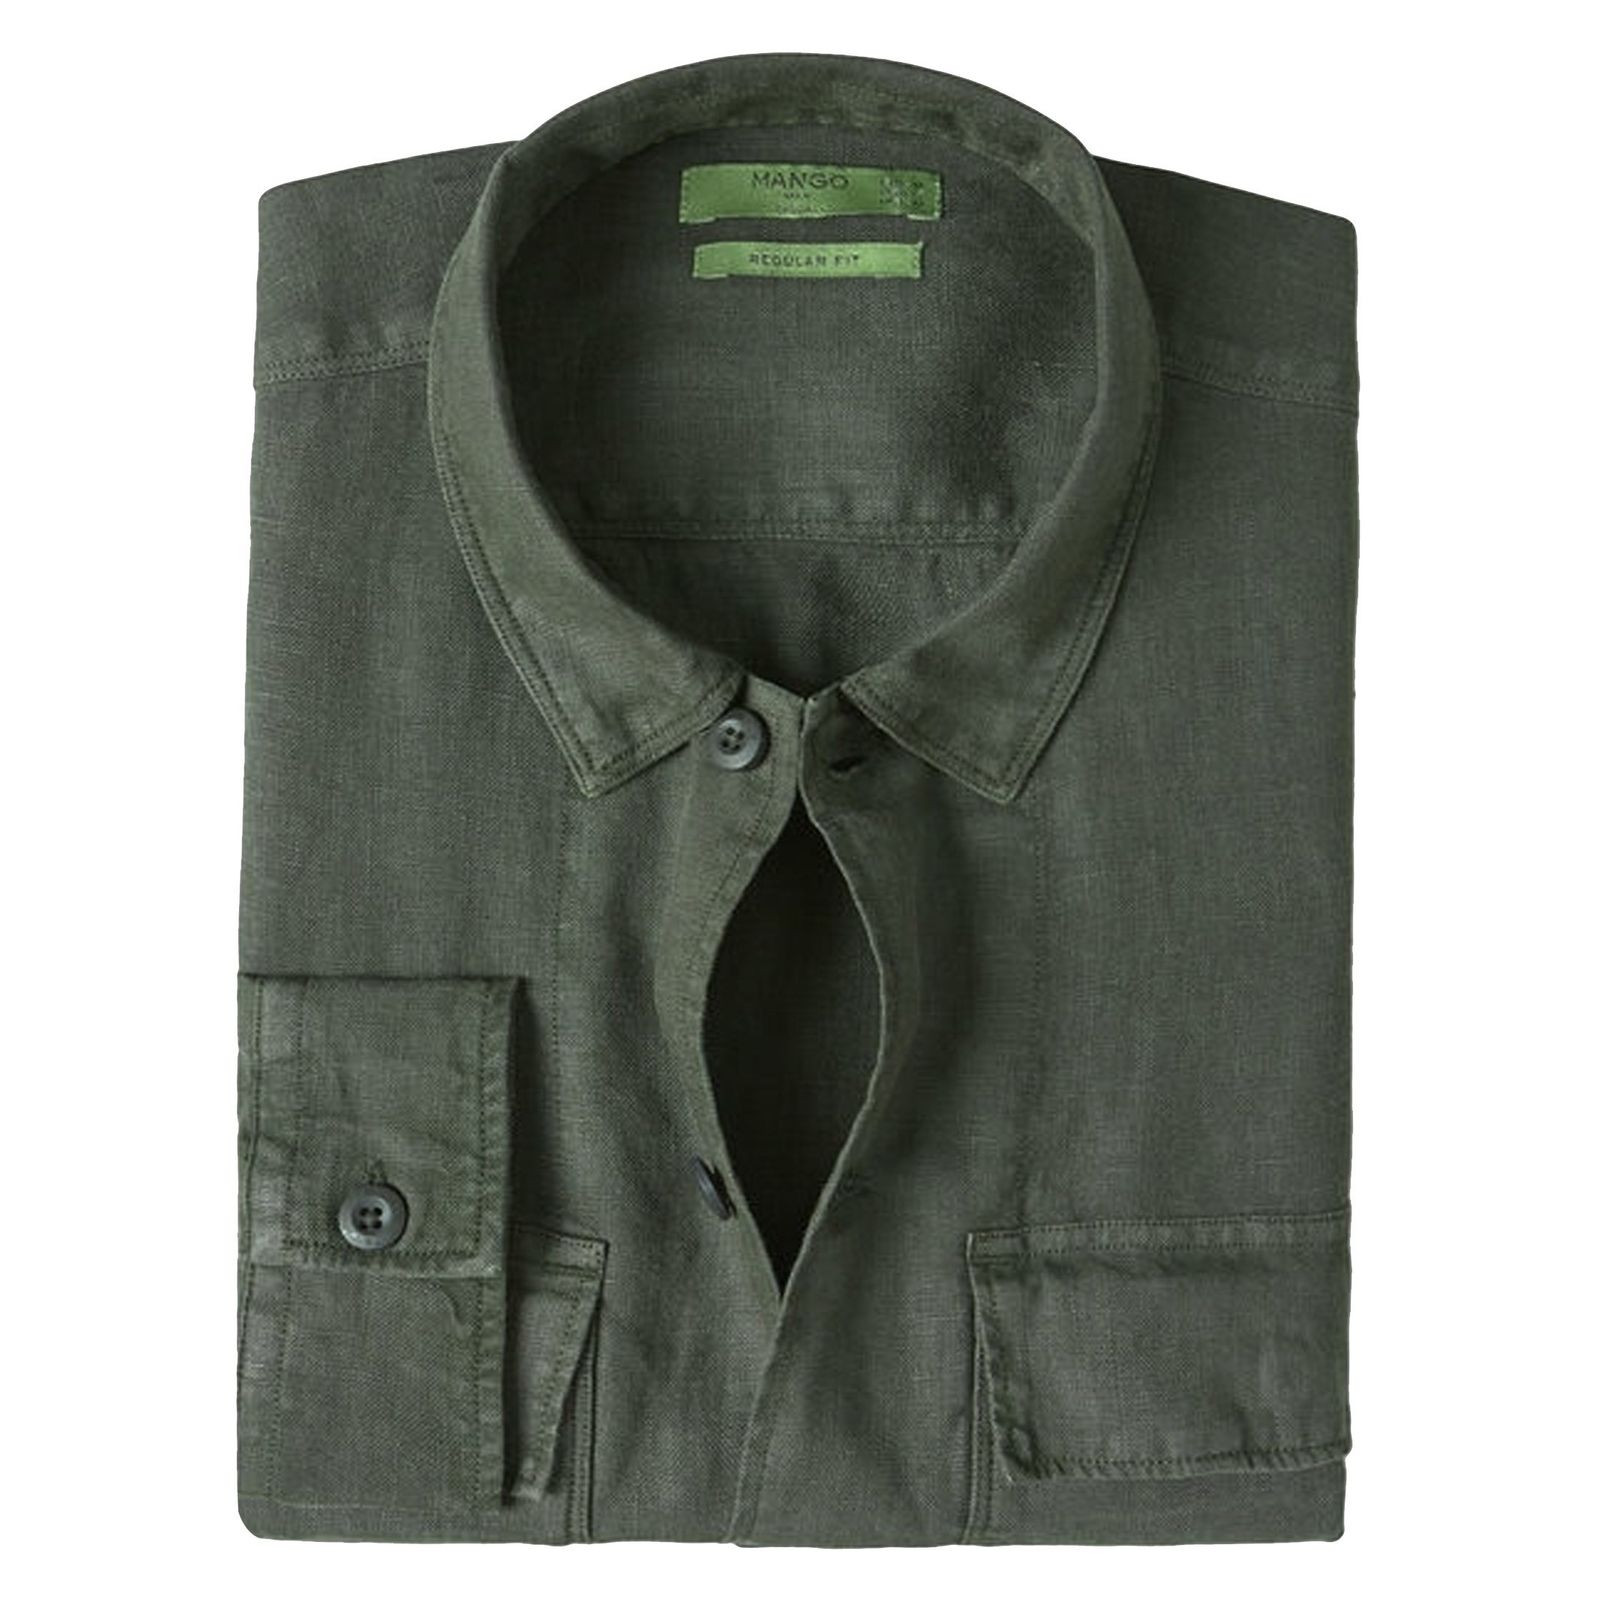 پیراهن آستین بلند مردانه - مانگو - سبز - 1